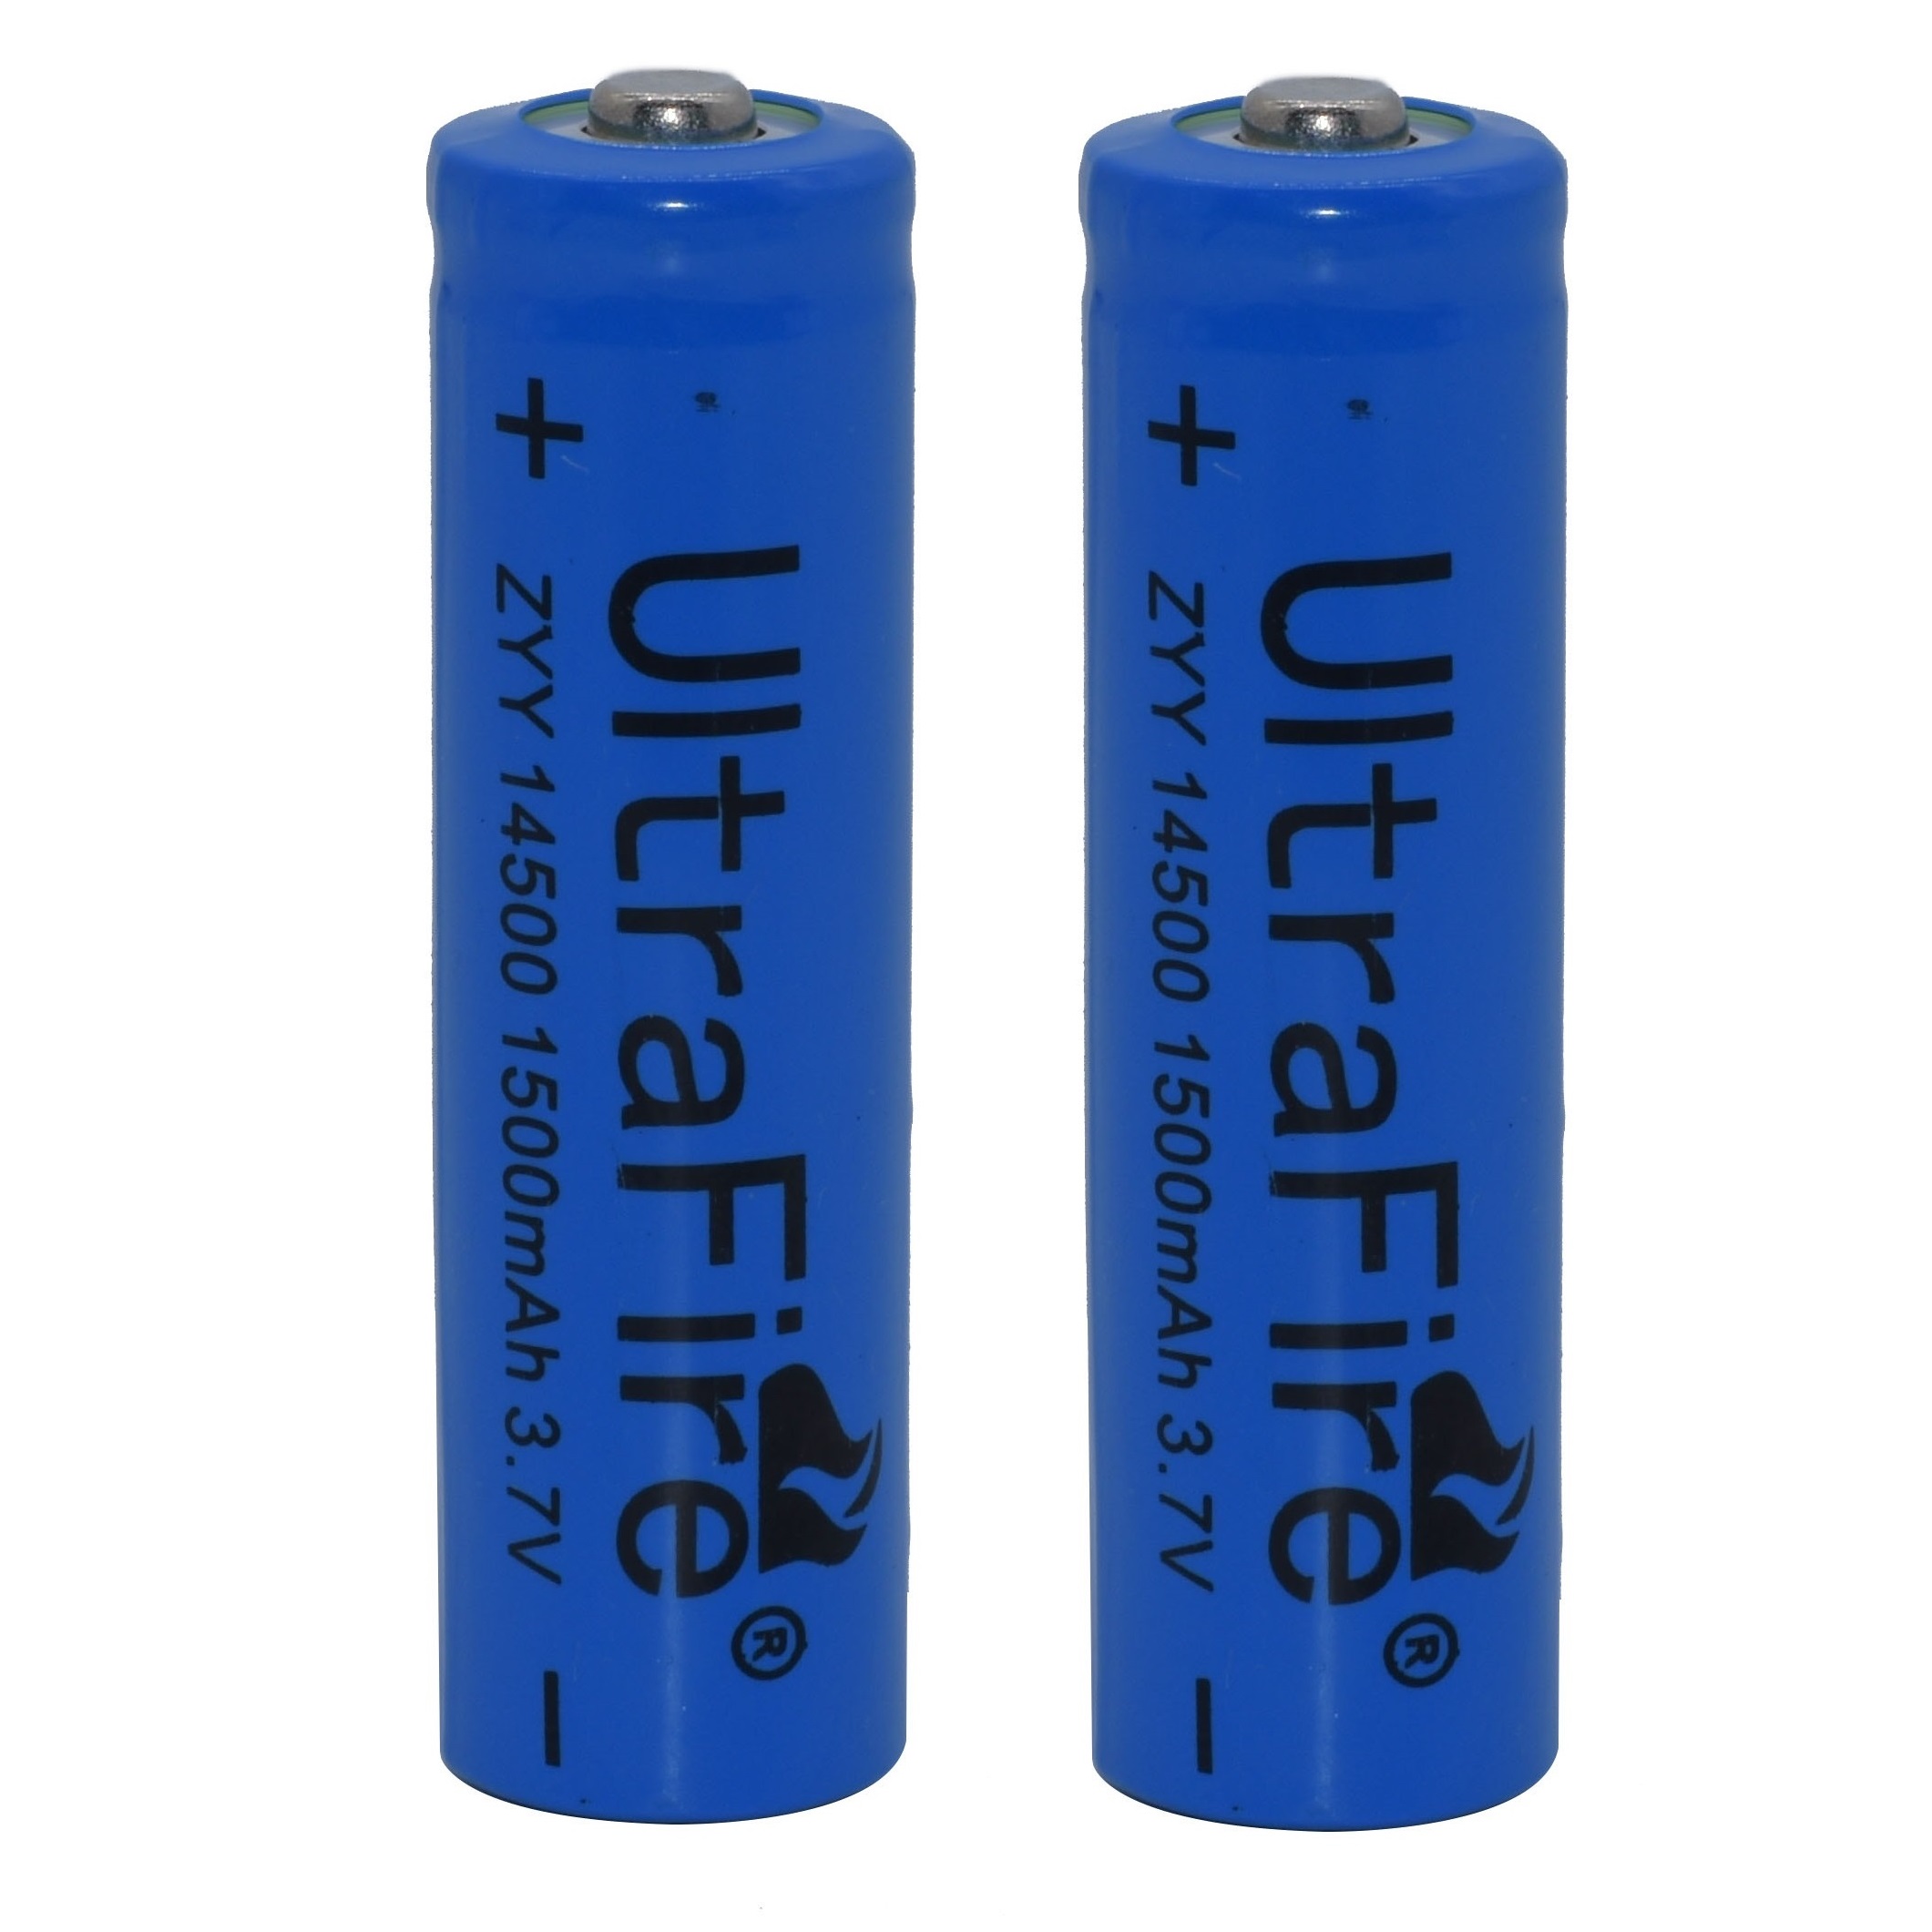 باتری لیتیوم-یون قابل شارژ اولترا فایر کد cmp.ZYY-14500 ظرفیت 1500 میلی آمپرساعت بسته 2 عددی